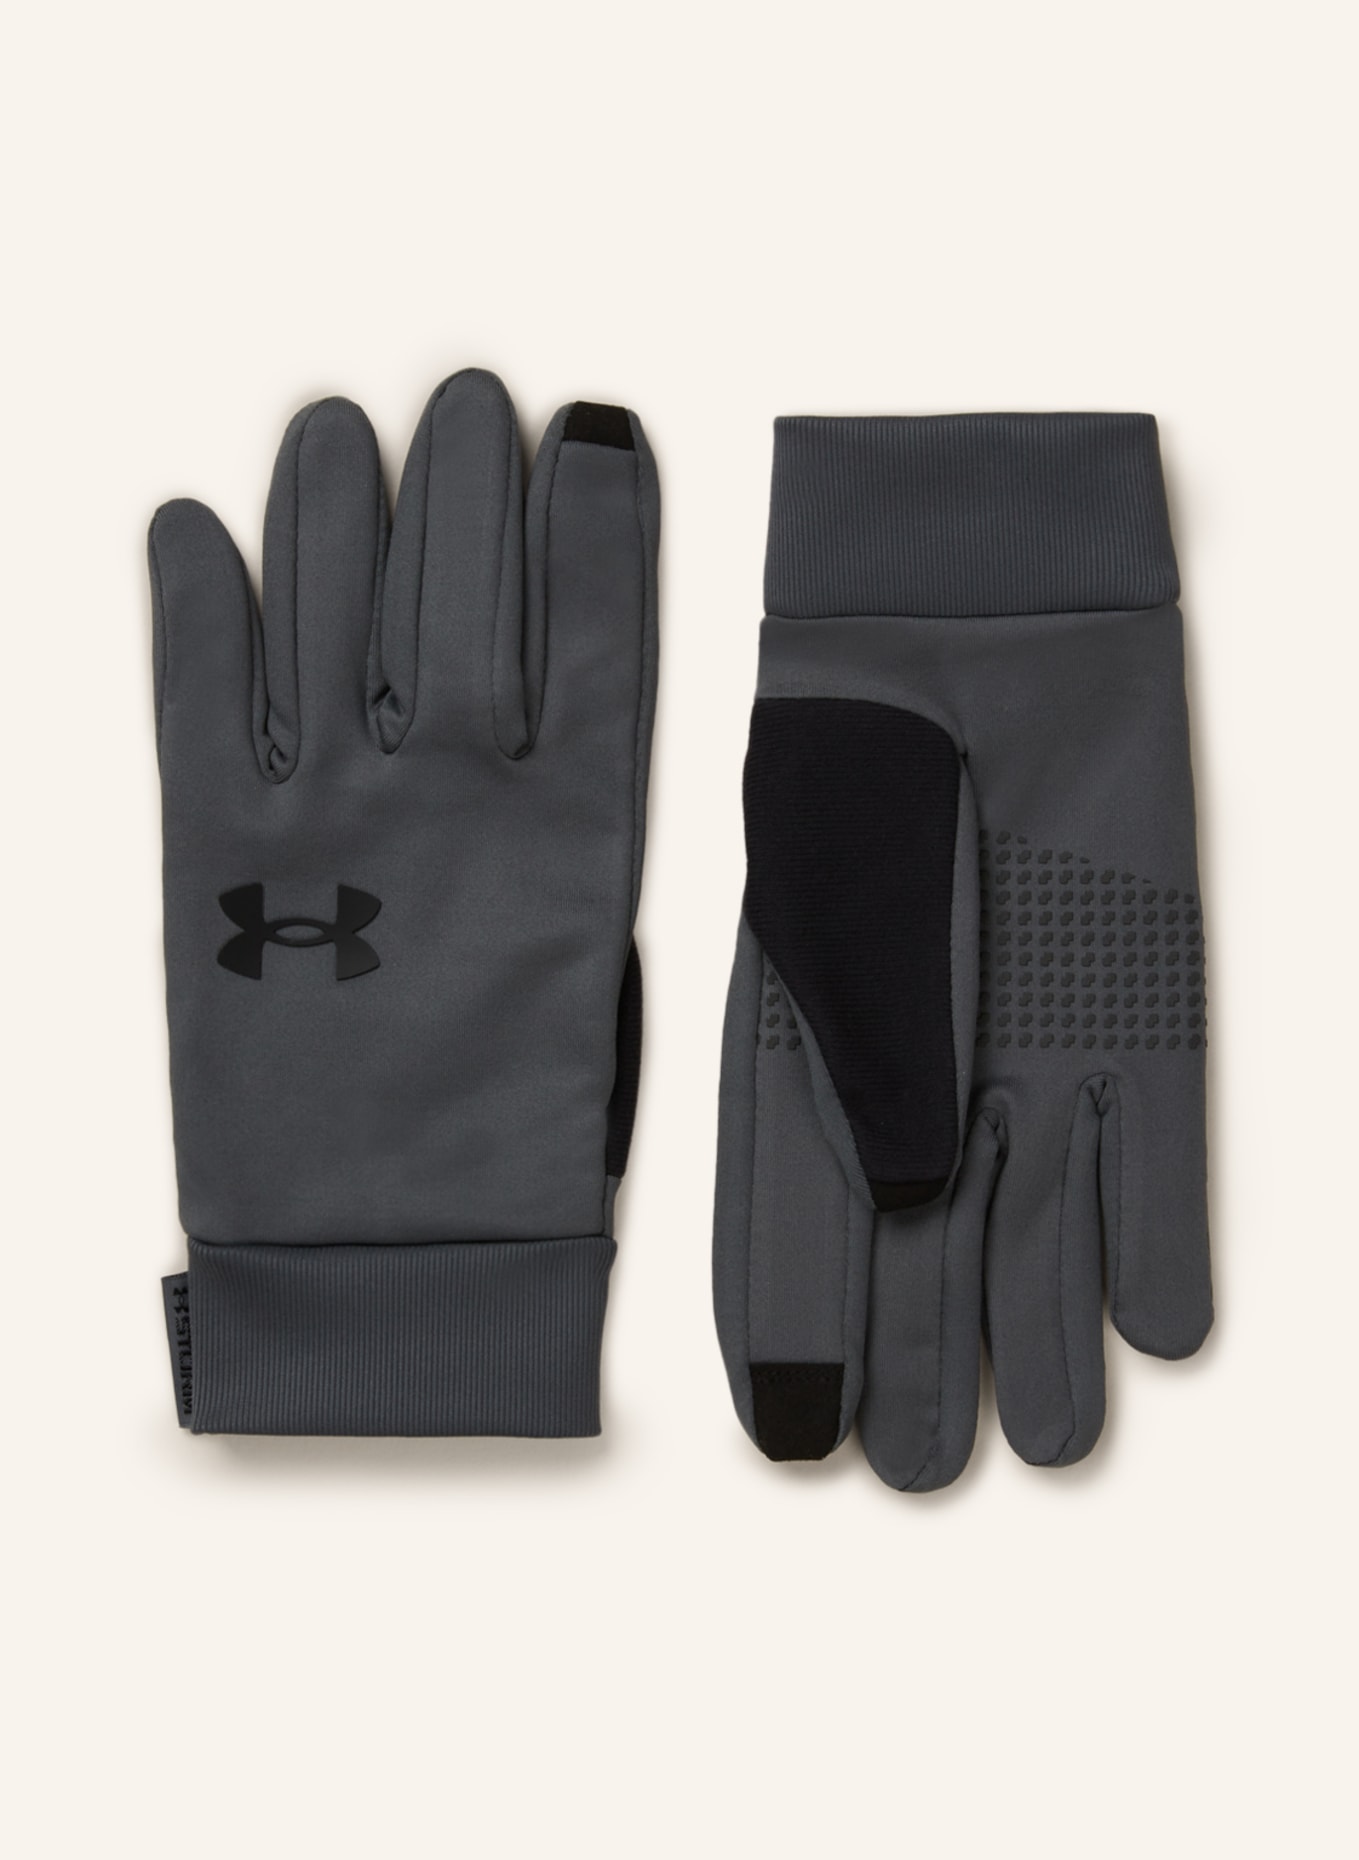 UNDER ARMOUR Multisport-Handschuhe UA STORM LINER mit Touchscreen-Funktion, Farbe: GRAU/ SCHWARZ (Bild 1)